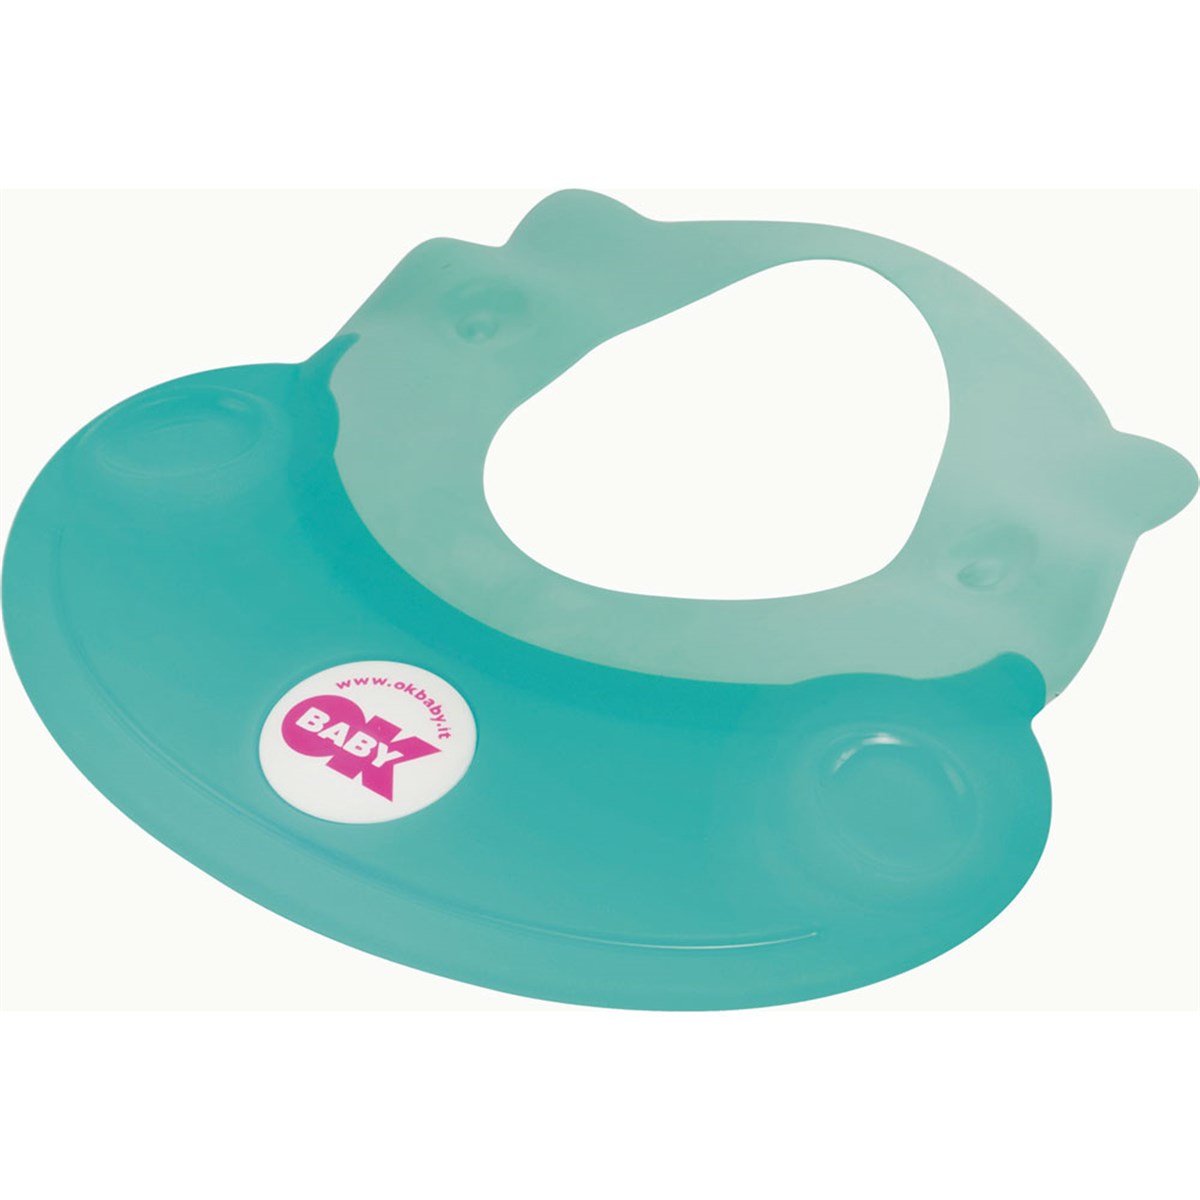 Козырек для купания. Козырек для купания Roxy Kids. Козырек Baby-krug 6m+. Приспособление для мытья головы детям. Защитный ободок для купания.